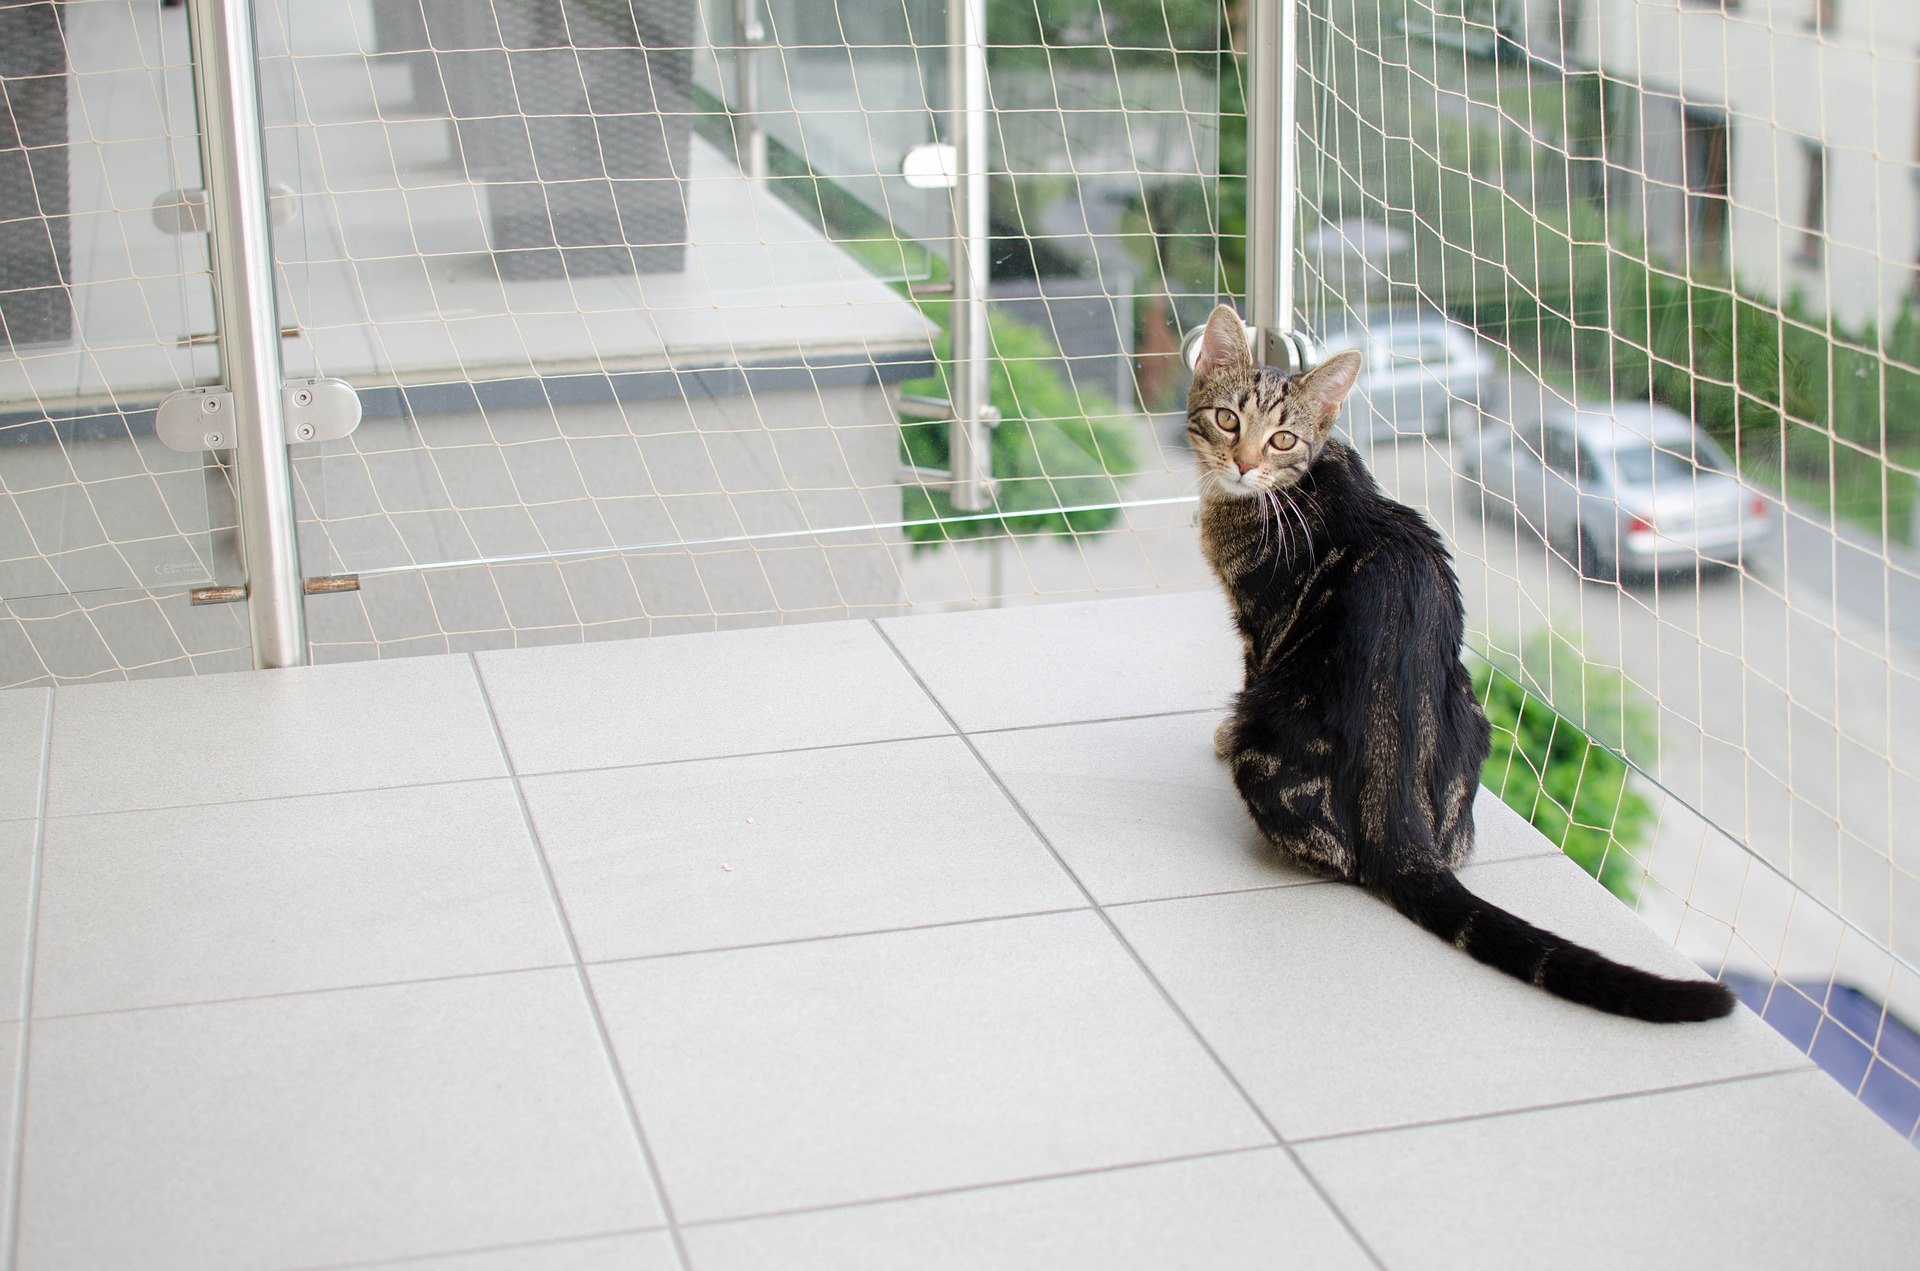 Síť na balkon pro kočku by měla být odolná proti prokousnutí.